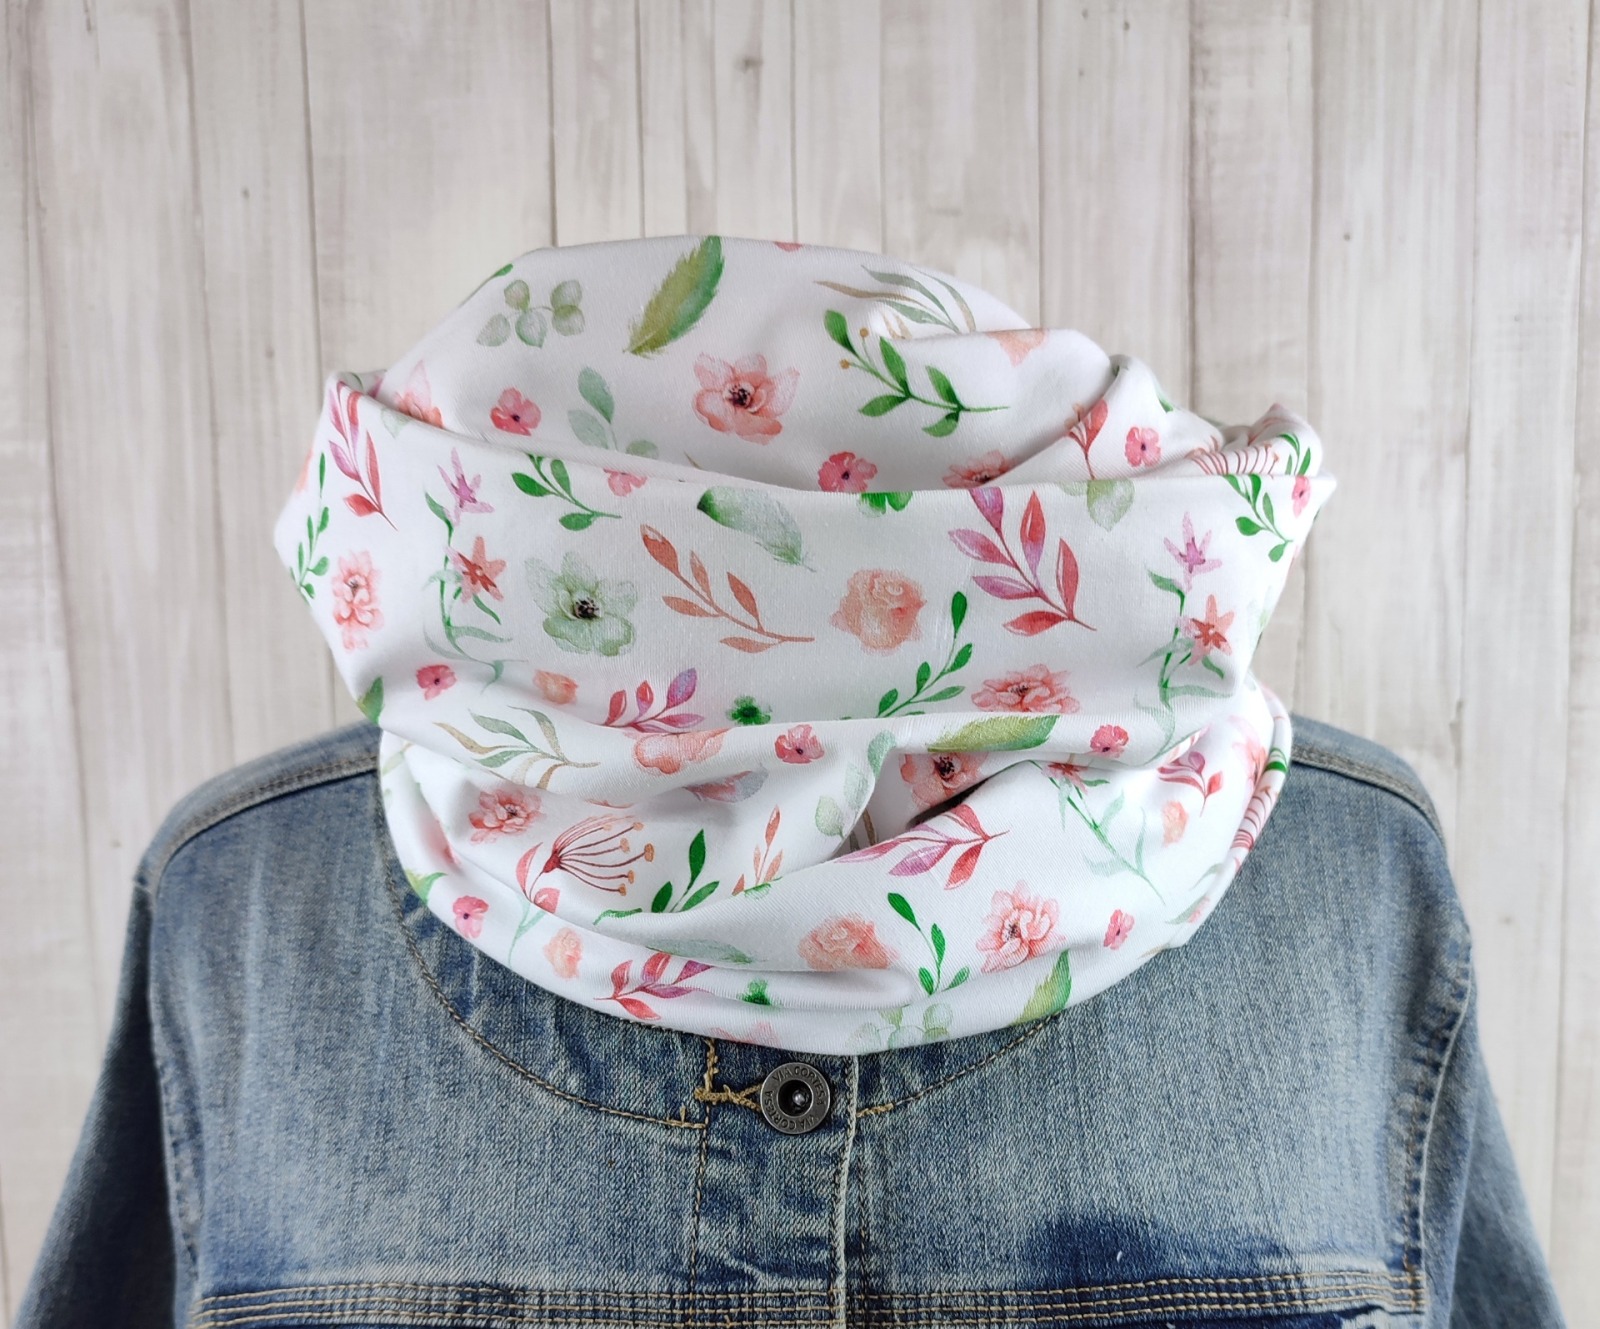 Loop Schlauchschal weiß mit kleinem Blumenmuster in lachsrosa und grün - Schal für Damen aus Jersey